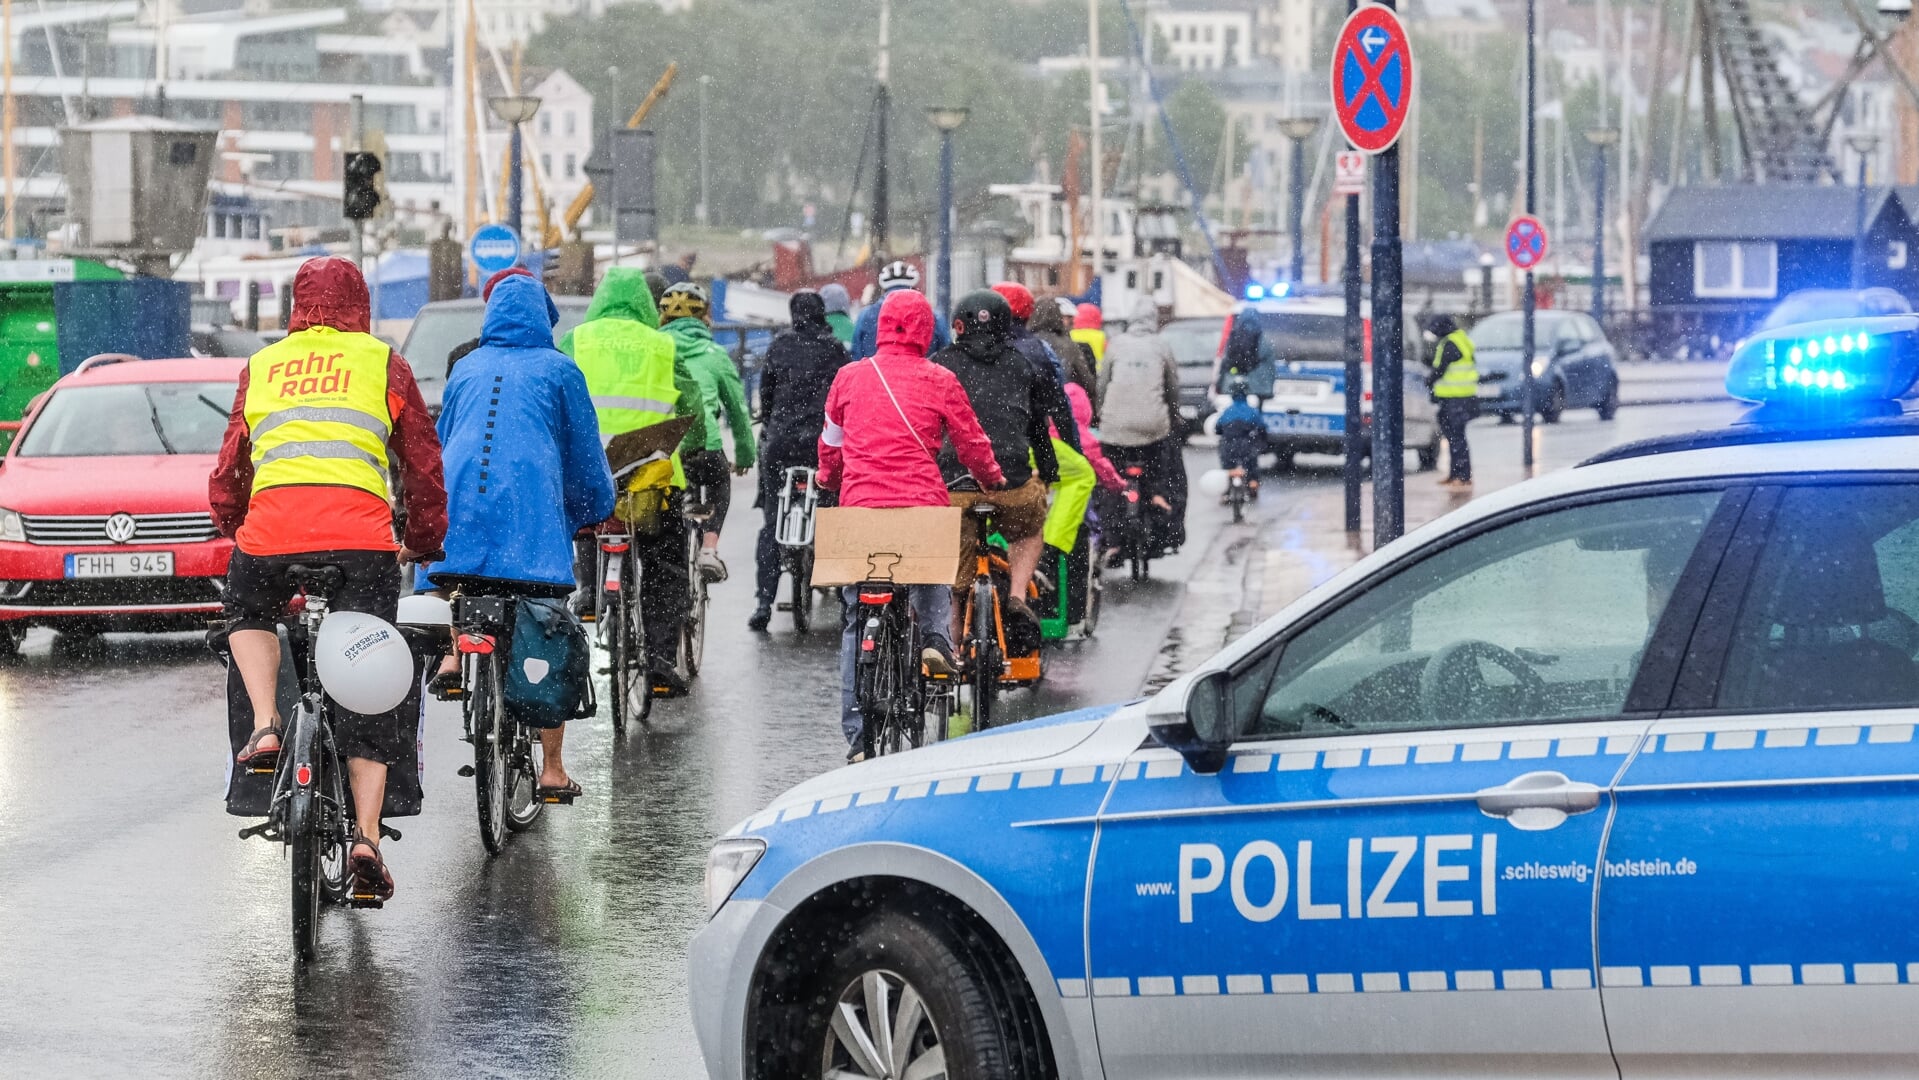 Die Stadt Flensburg erwartet am Freitag Verkehrsbehinderungen durch zwei Kundgebungen, darunter eine Fahrraddemo. Archivfoto: